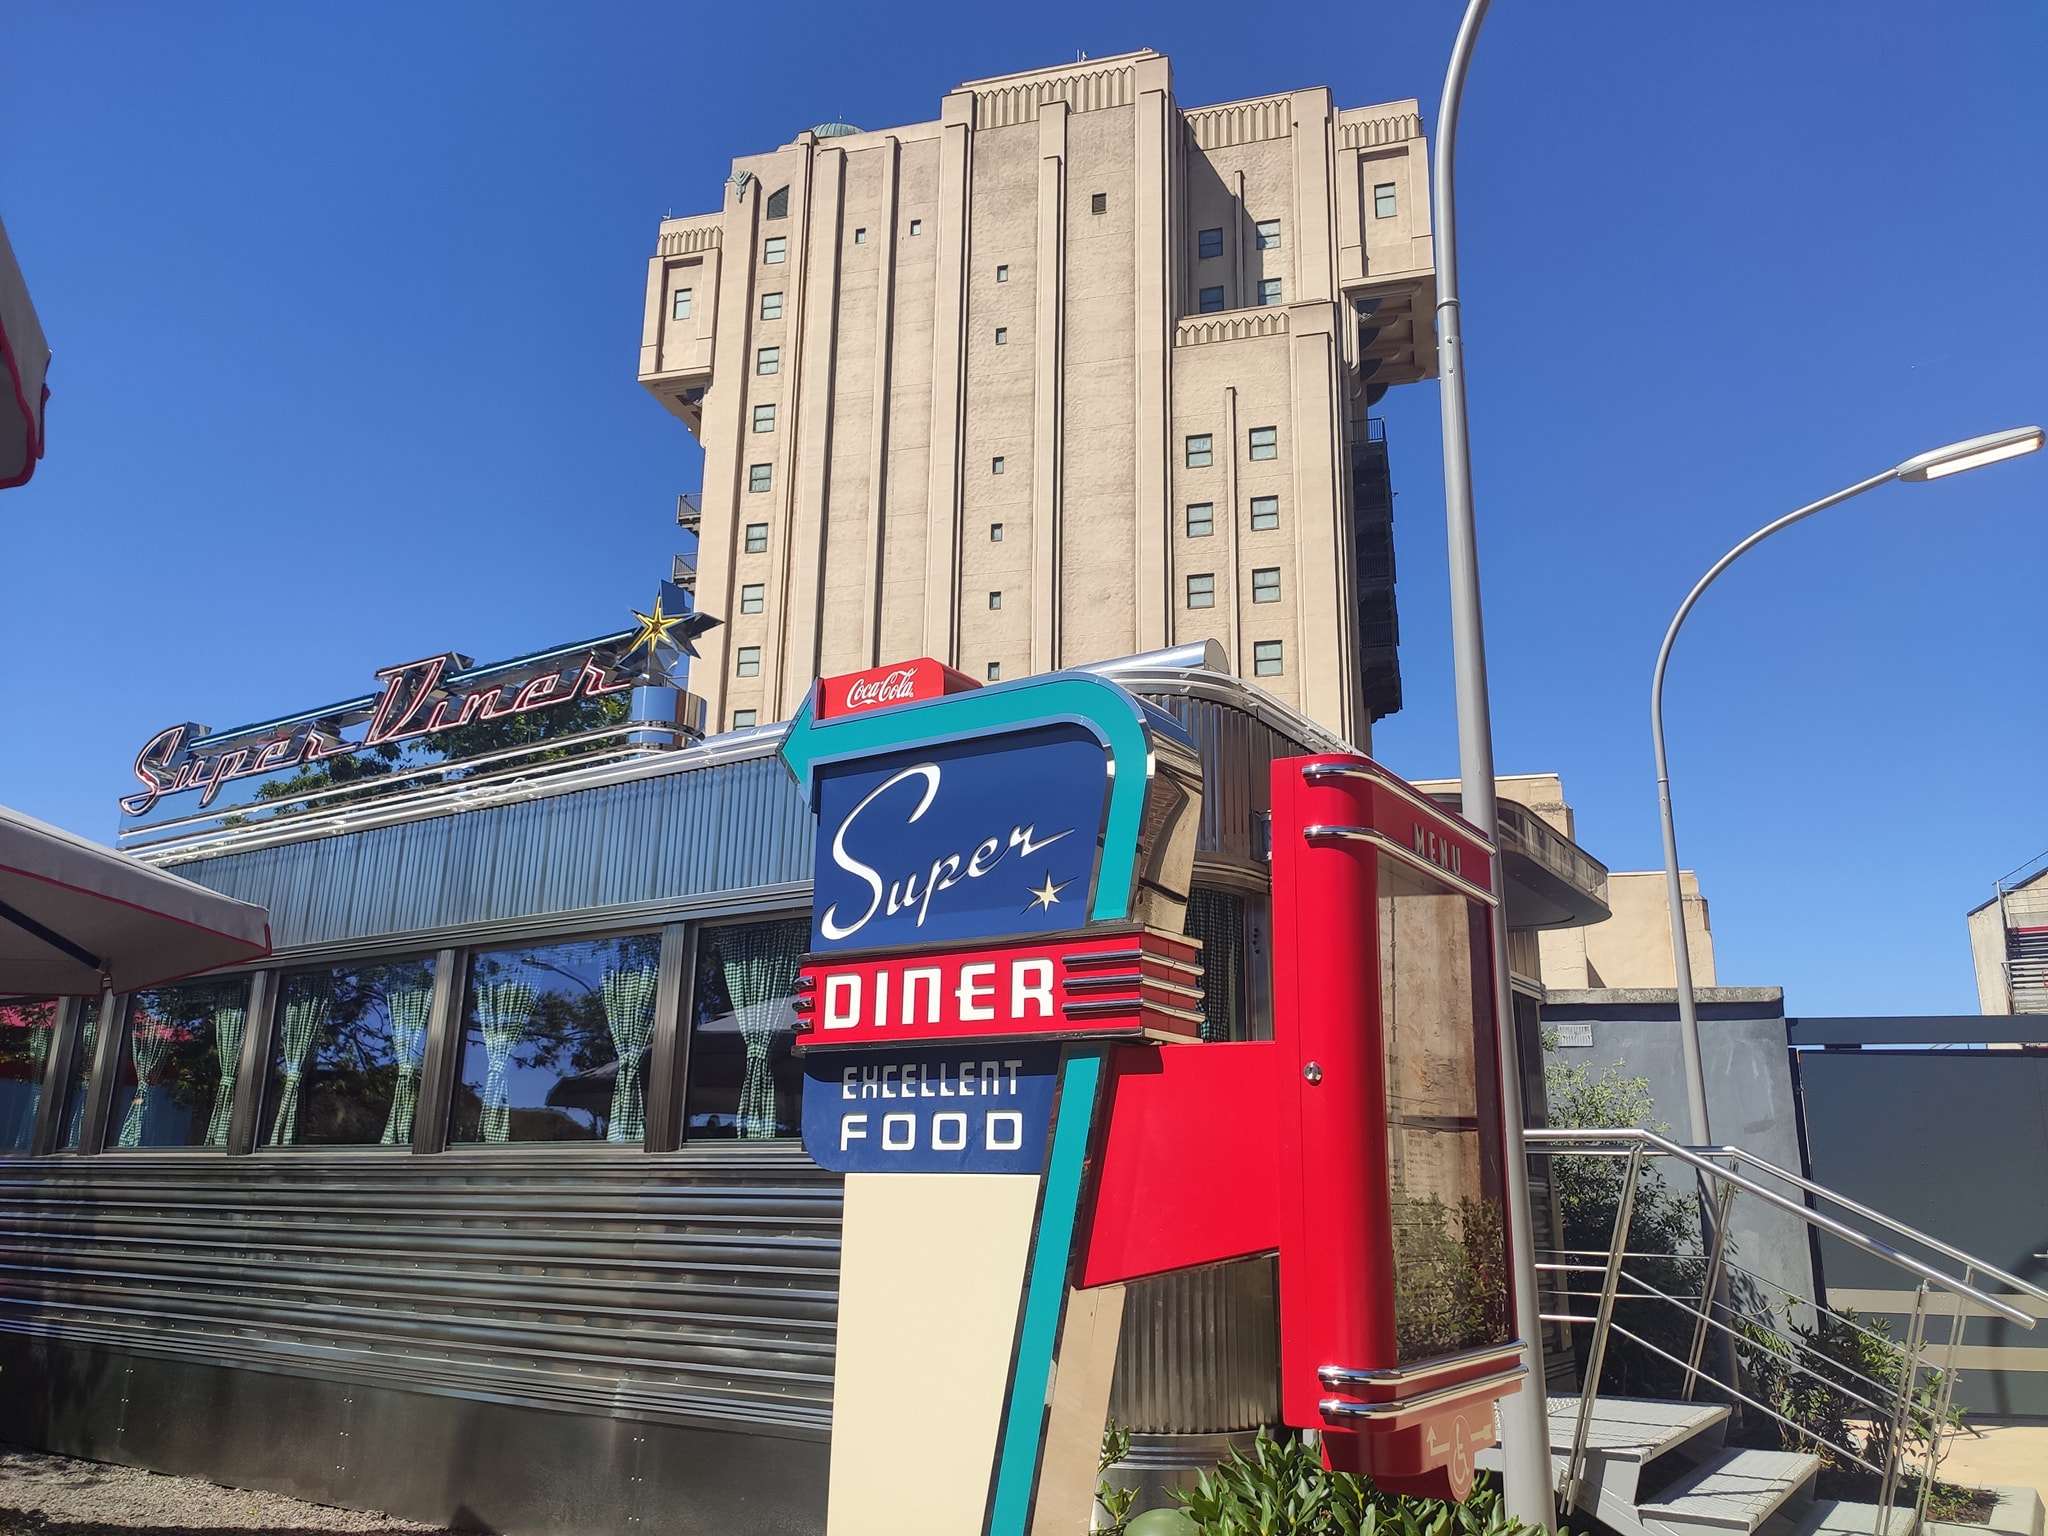 Super Diner - Avengers Campus - Disneyland Paris